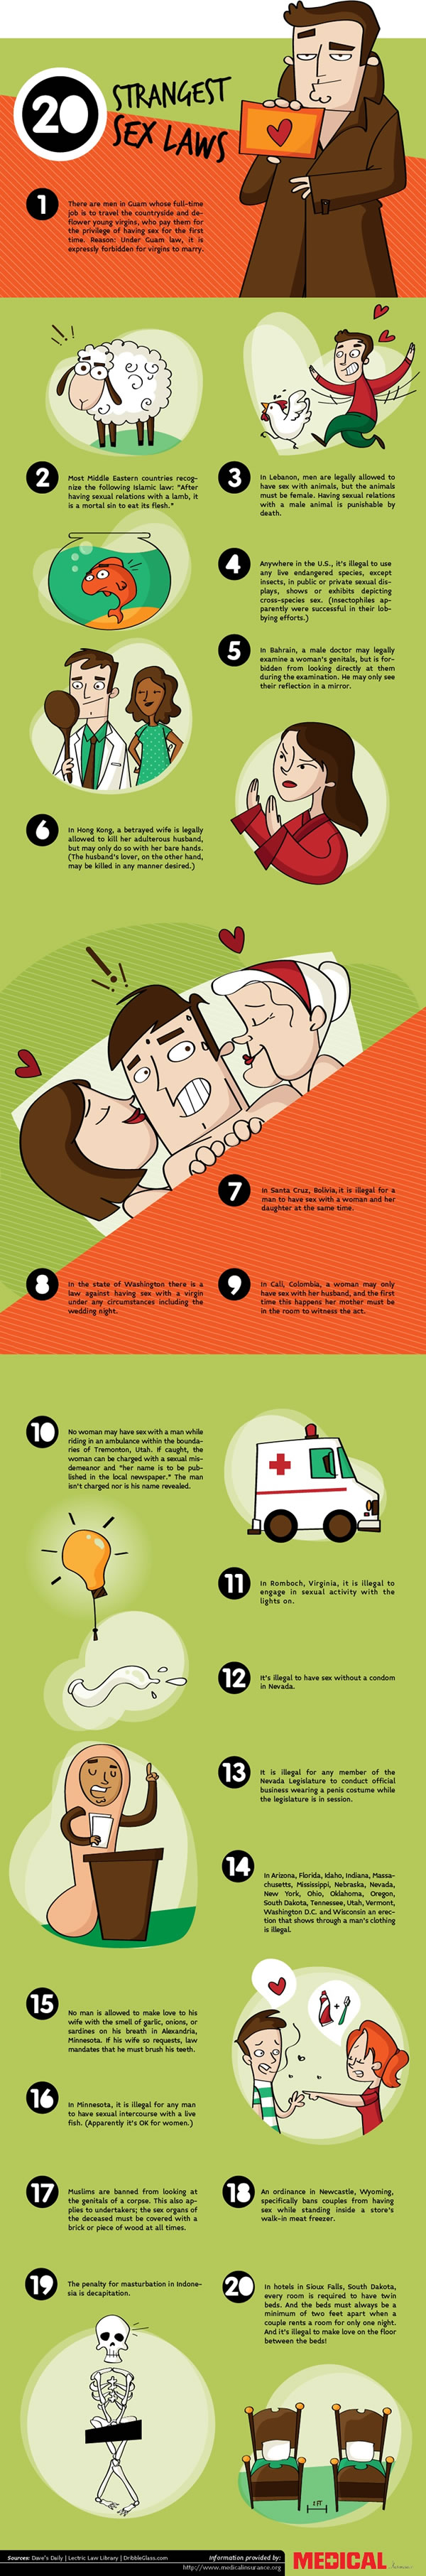 20 leyes extrañas sobre sexo #infografía #Humor 1